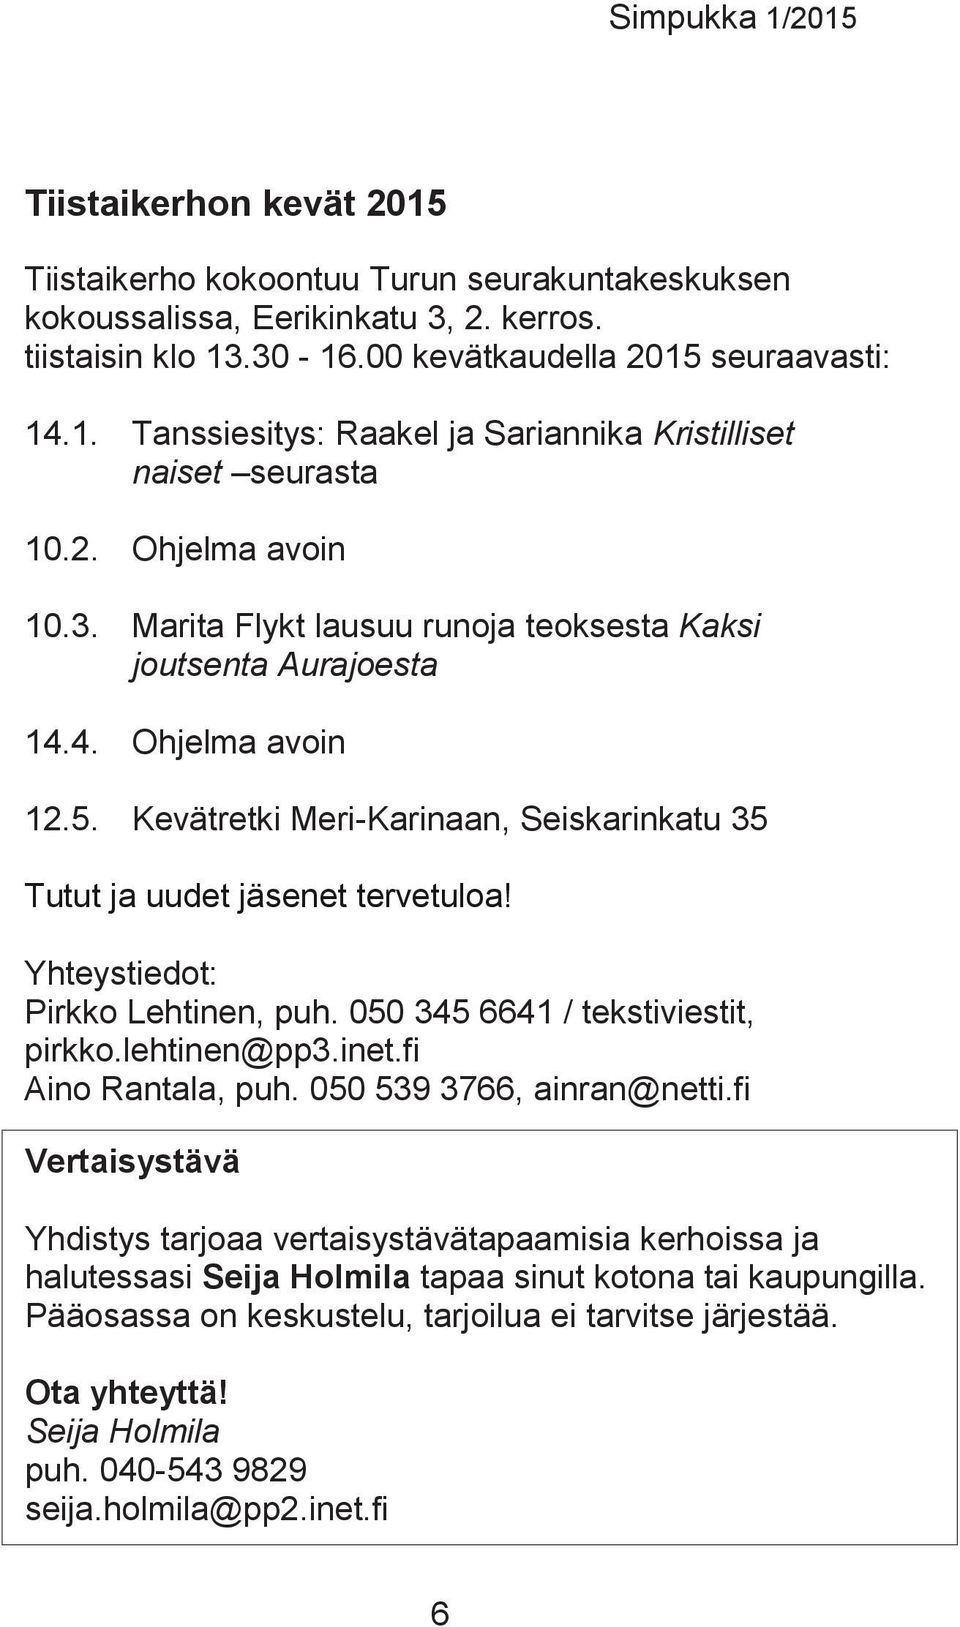 Yhteystiedot: Pirkko Lehtinen, puh. 050 345 6641 / tekstiviestit, pirkko.lehtinen@pp3.inet.fi Aino Rantala, puh. 050 539 3766, ainran@netti.